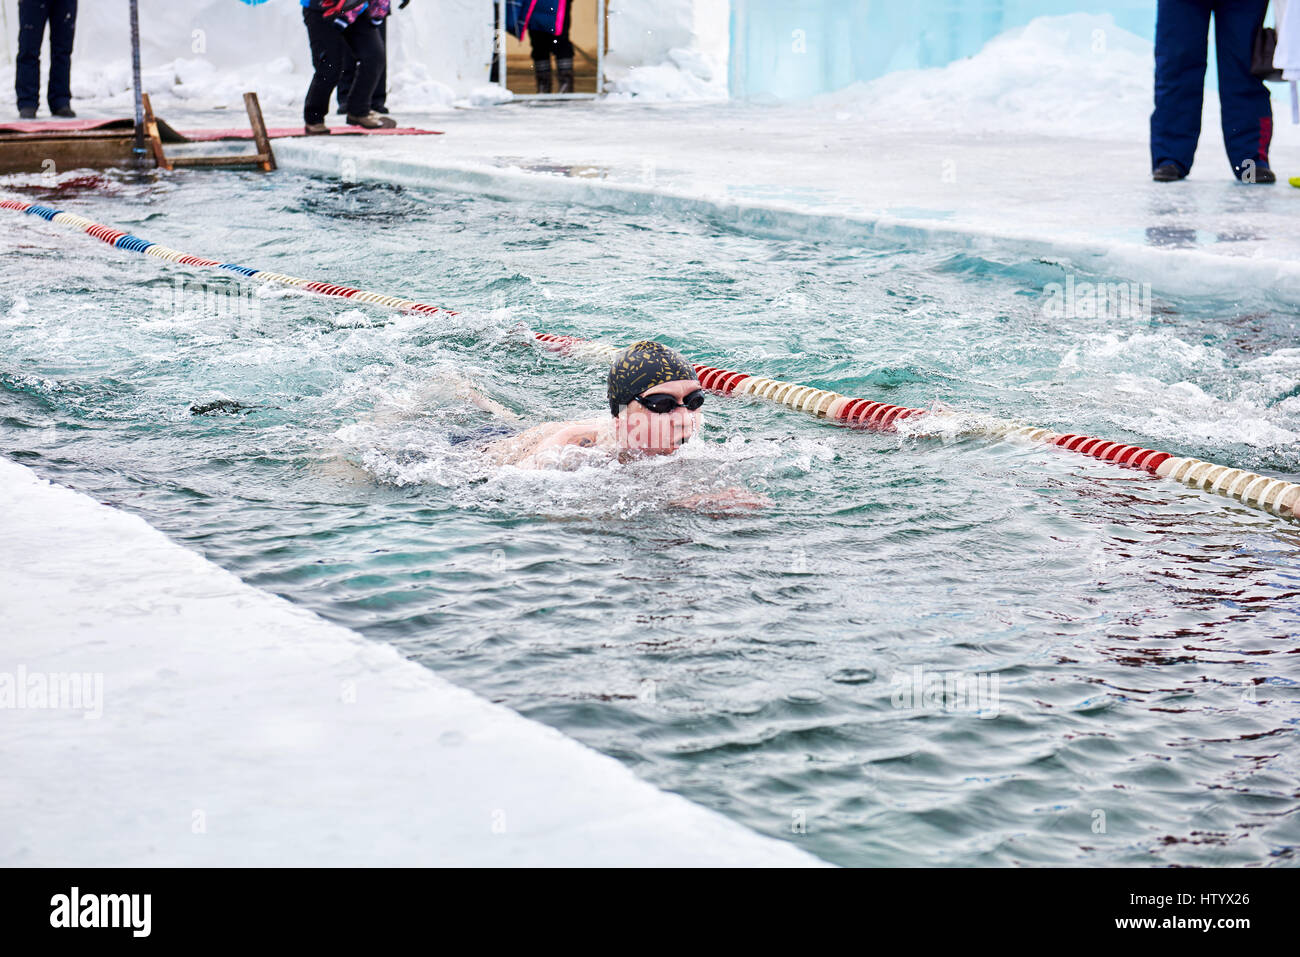 SAHYURTA, région d'Irkoutsk, RUSSIE - Mars 11,2017 : Tasse de Baikal. Les compétitions de natation d'hiver. Un nageur se déplace très rapidement dans l'eau très froide dans un hol Banque D'Images